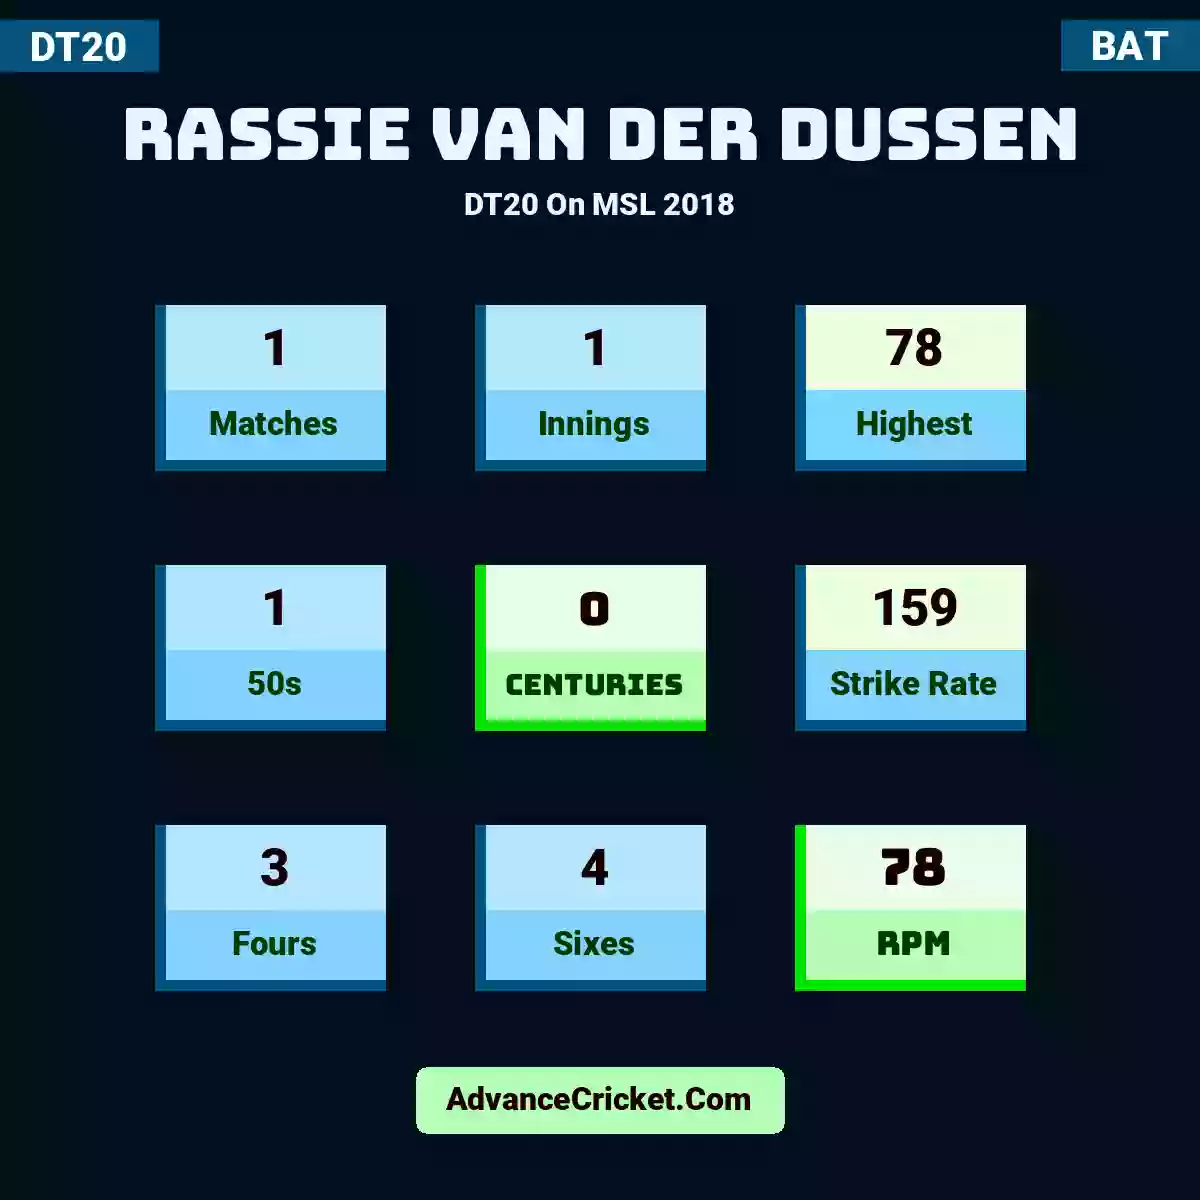 Rassie van der Dussen DT20  On MSL 2018, Rassie van der Dussen played 1 matches, scored 78 runs as highest, 1 half-centuries, and 0 centuries, with a strike rate of 159. R.Dussen hit 3 fours and 4 sixes, with an RPM of 78.